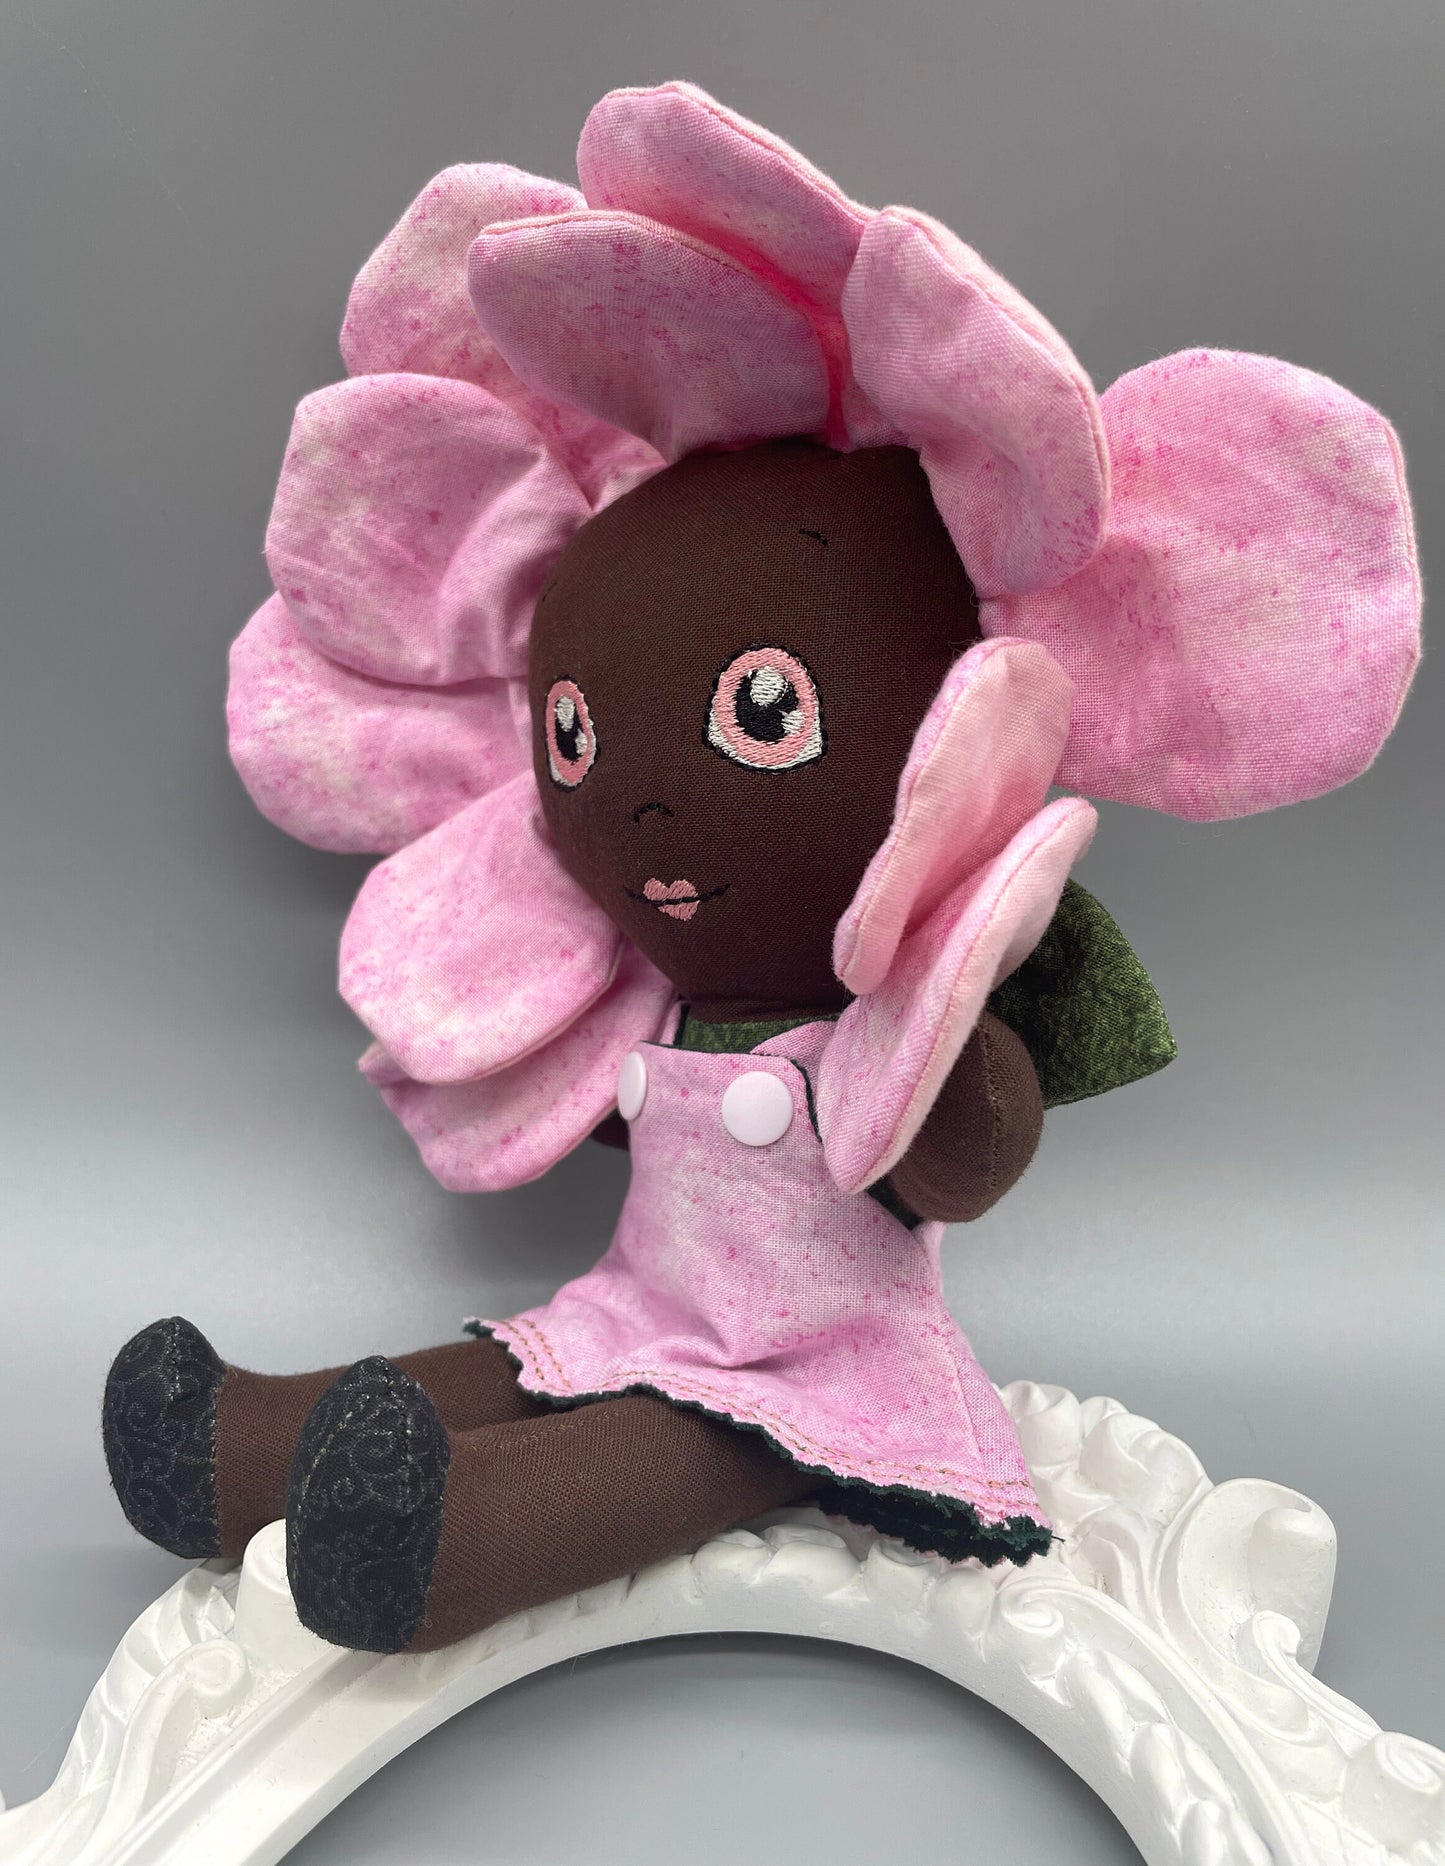 FLOWER DOLL, VALENTINE ROSE doll, Black Doll, Posable petals doll, Handmade, reversible dress, Rose, pink, easter, heirloom doll, flower girl, gift